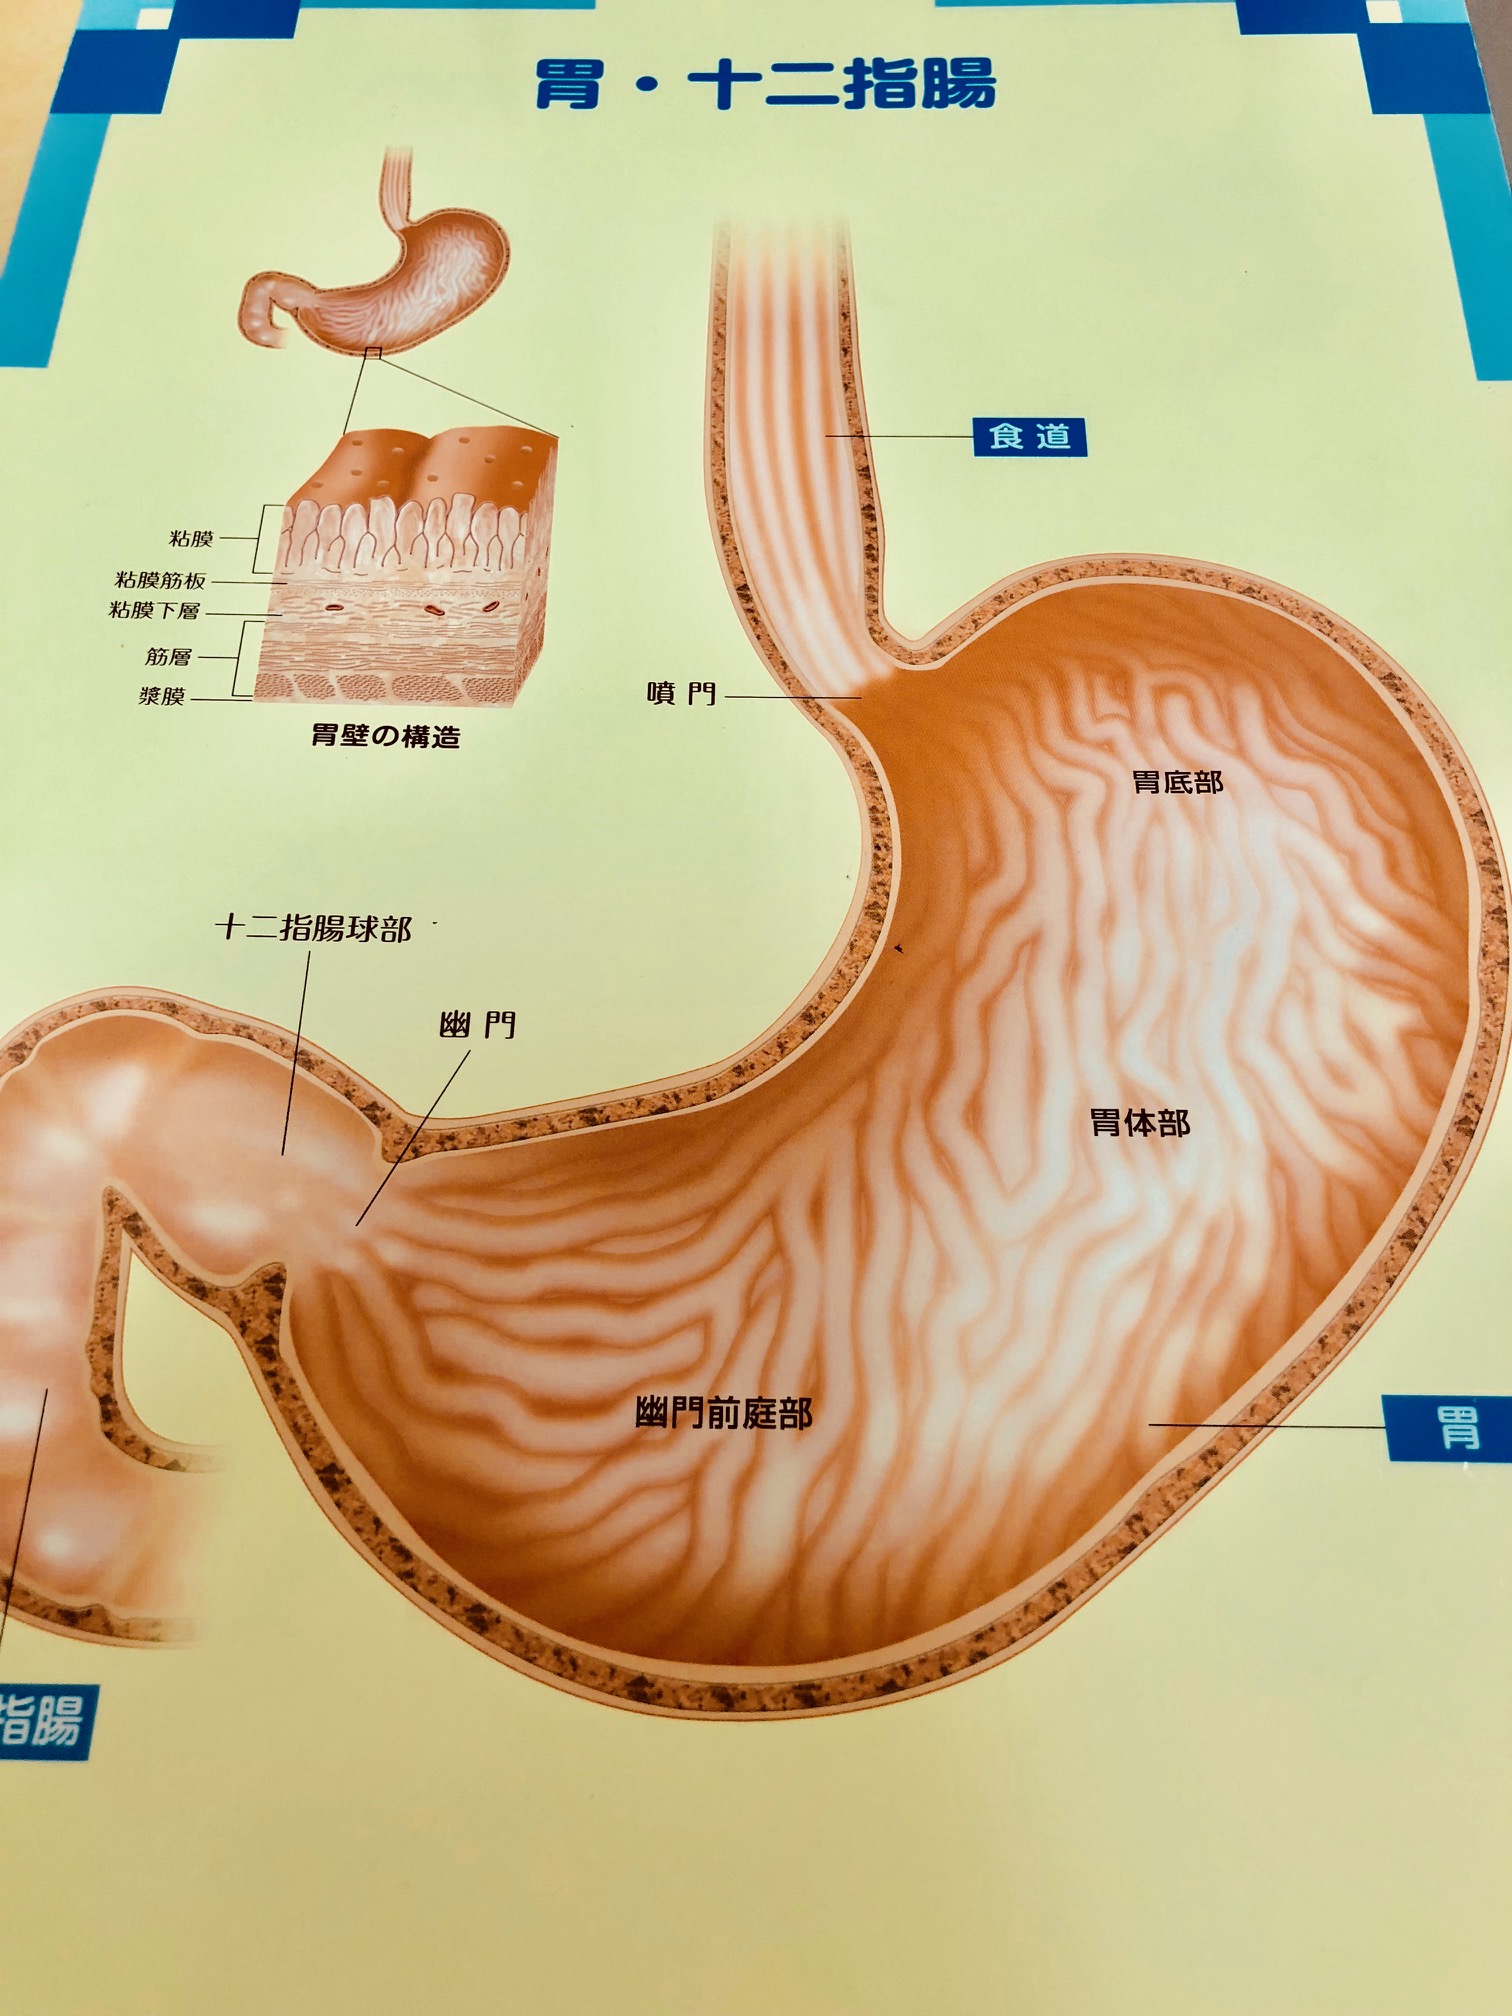 なぜいつも胃の調子が悪いのか 福岡天神内視鏡クリニックブログ